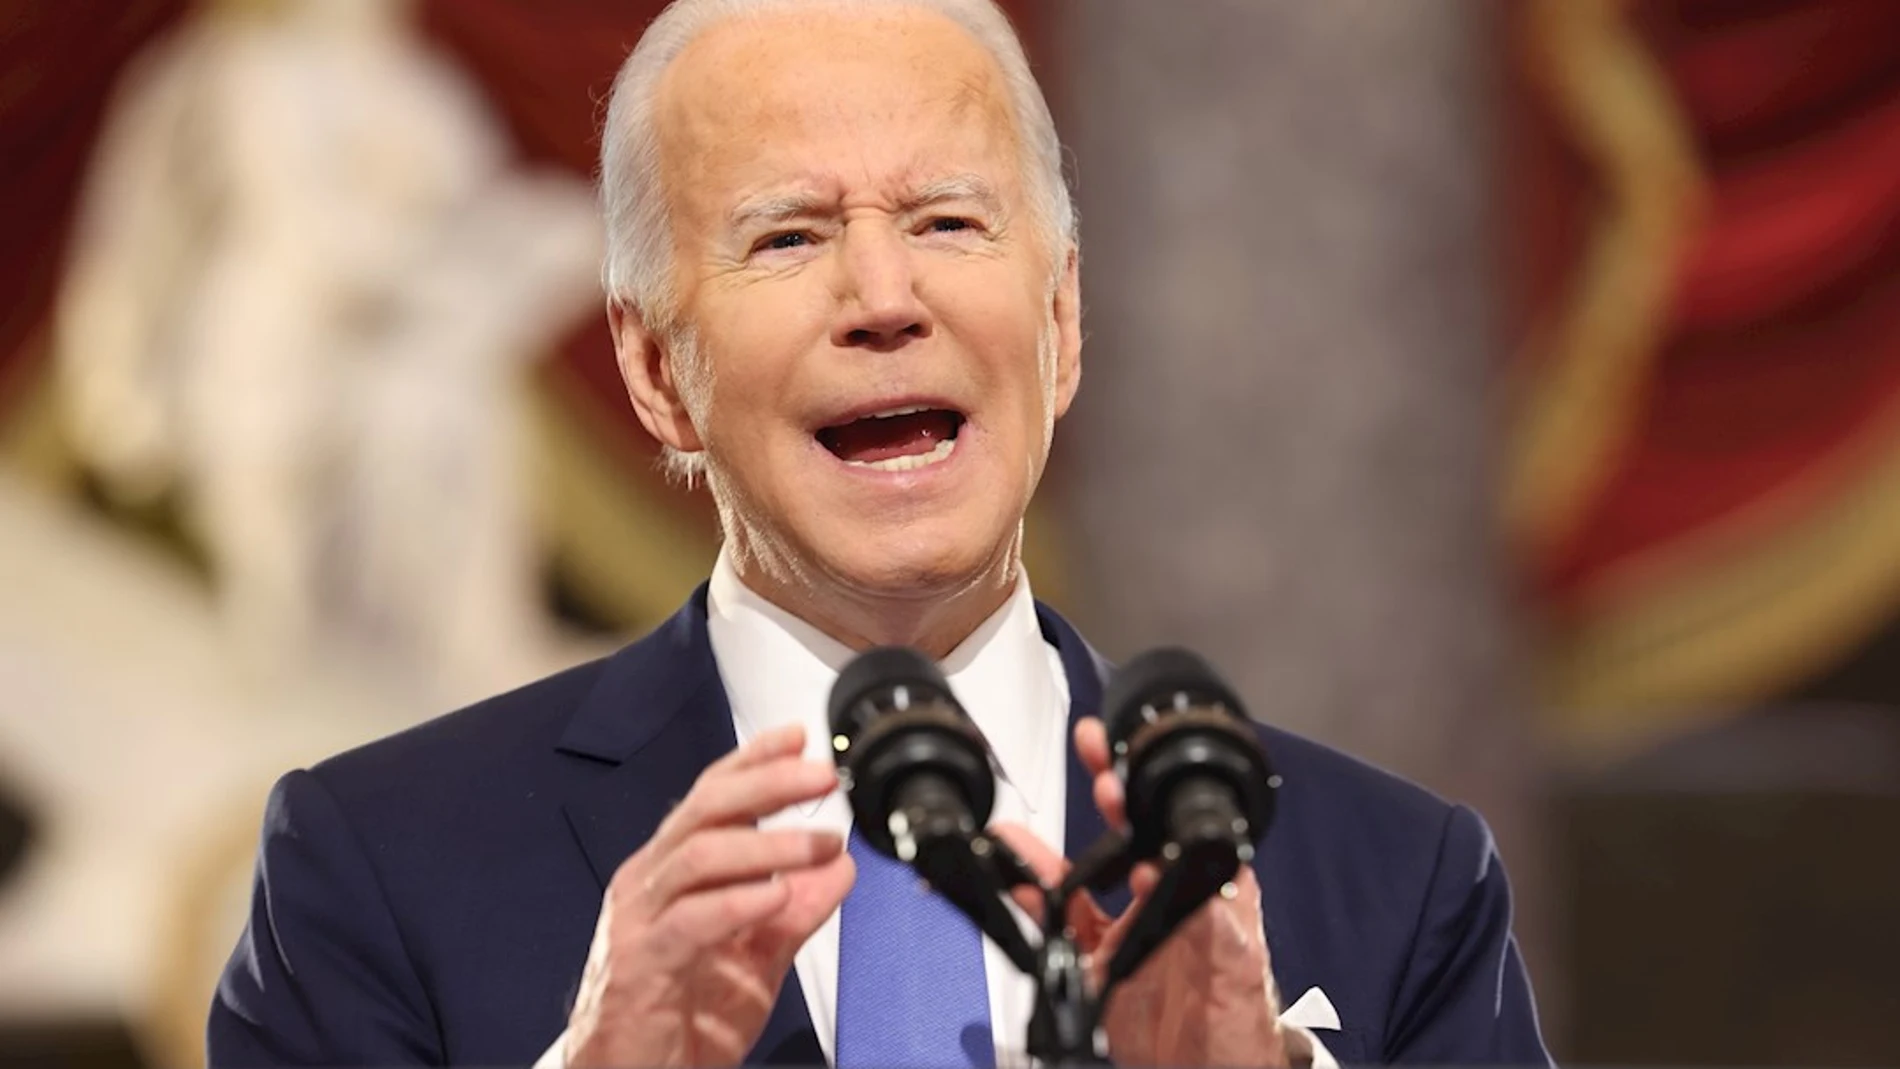 El presidente de EE.UU. Joe Biden pronuncia un discurso en la conmemoración del primer aniversario del asalto al Capitolio en Washington